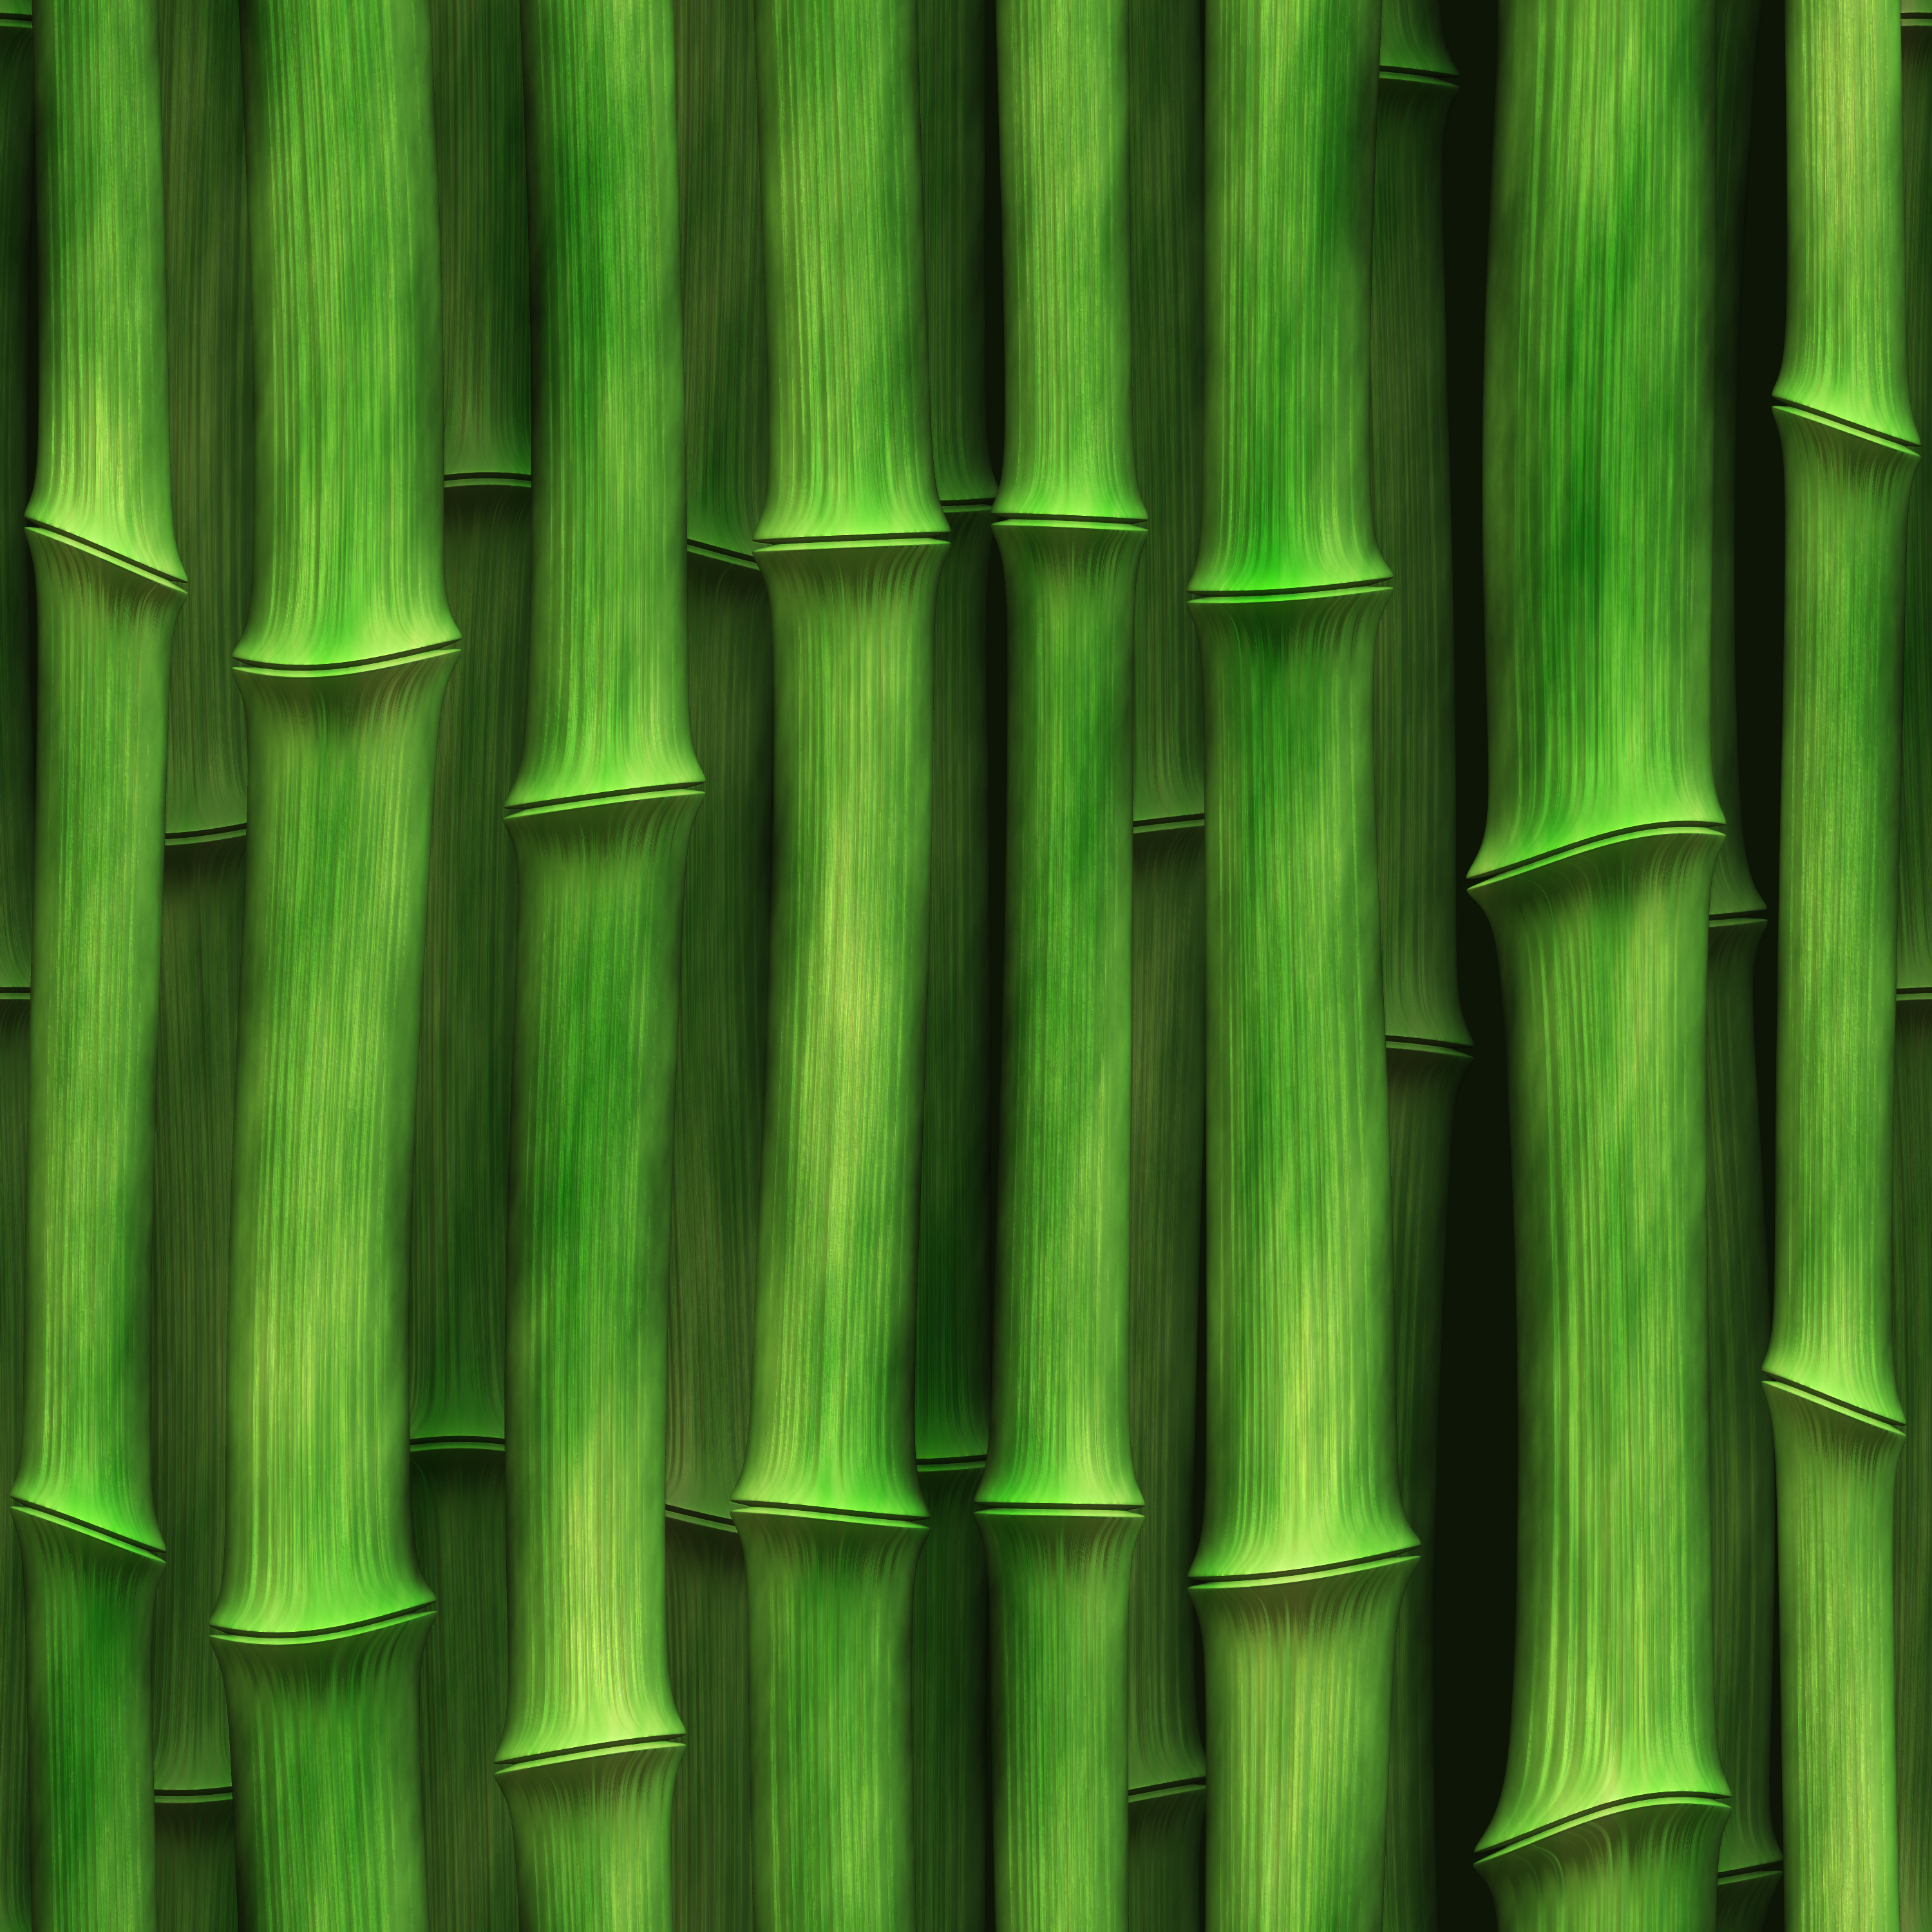 green bamboo, Texture bamboo, green bamboo texture, photo, background